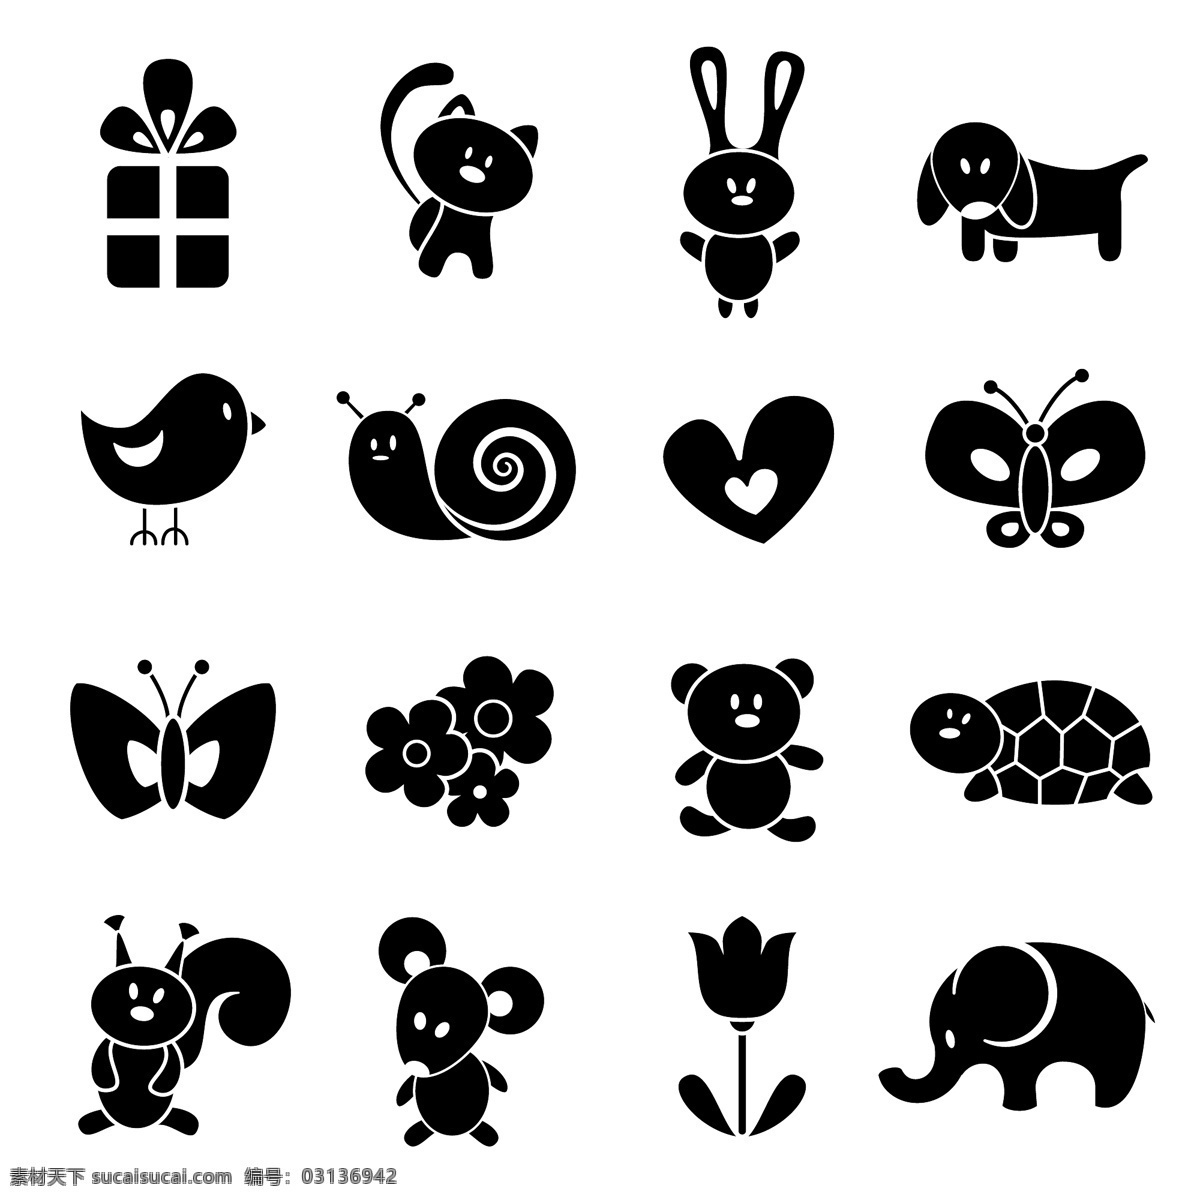 可爱动物剪影 动物 可爱 剪影 儿童 图标 矢量图 生物世界